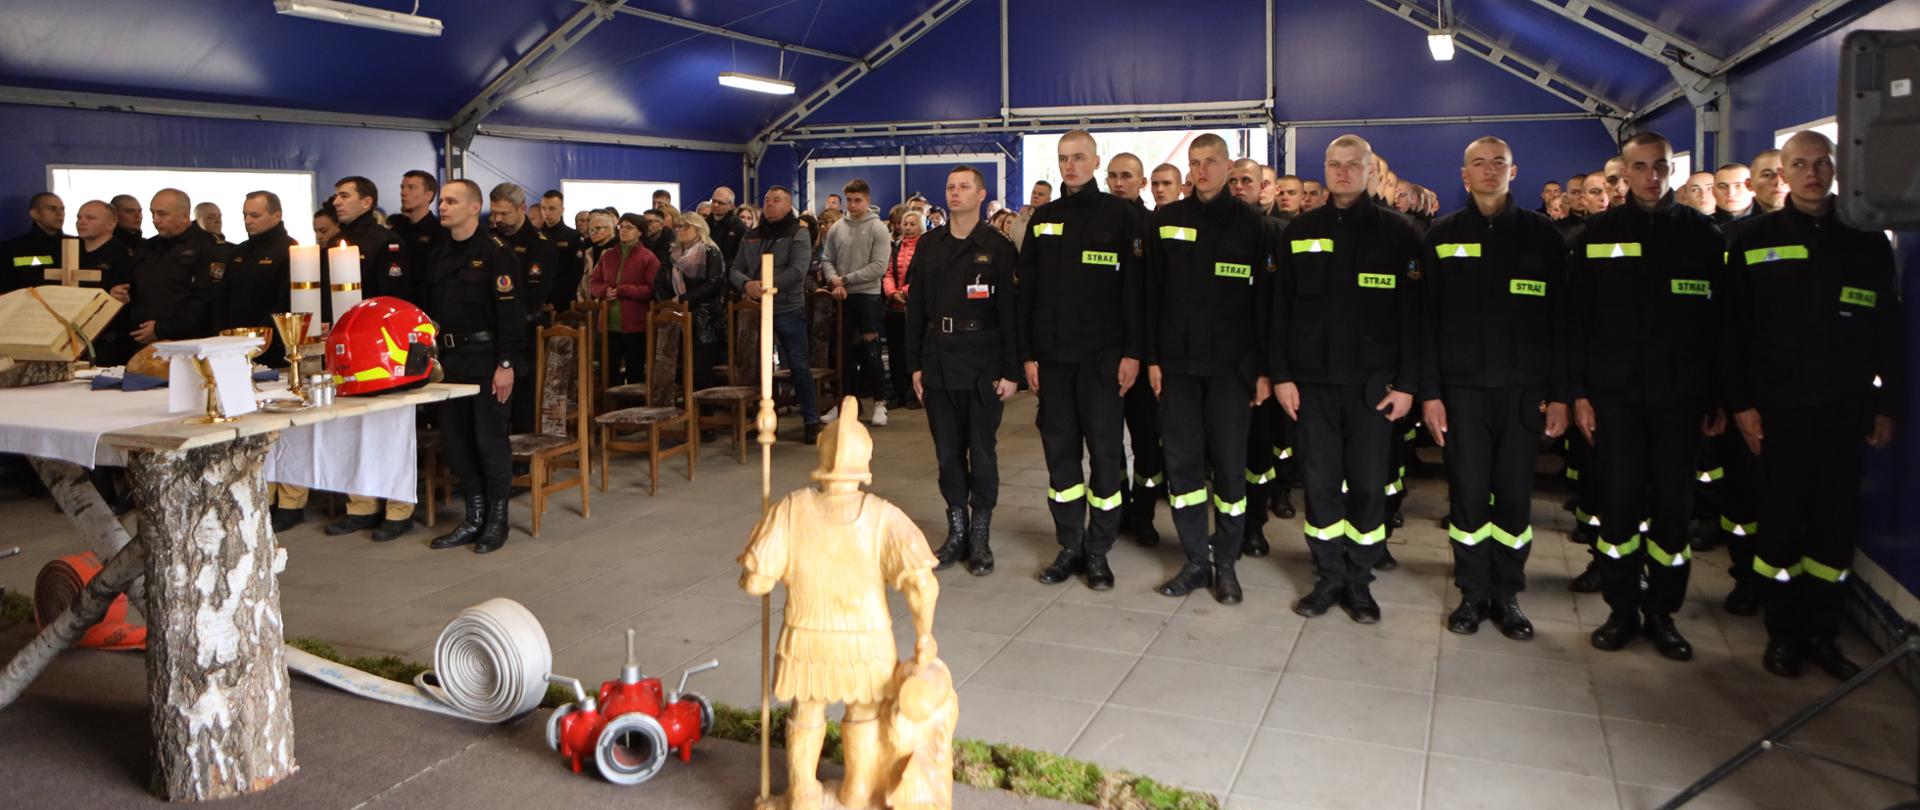 Na zdjęciu widać stojących obok siebie strażaków Zgrupowania Kandydackiego podczas Mszy Świętej obok ołtarz i figura św. Floriana